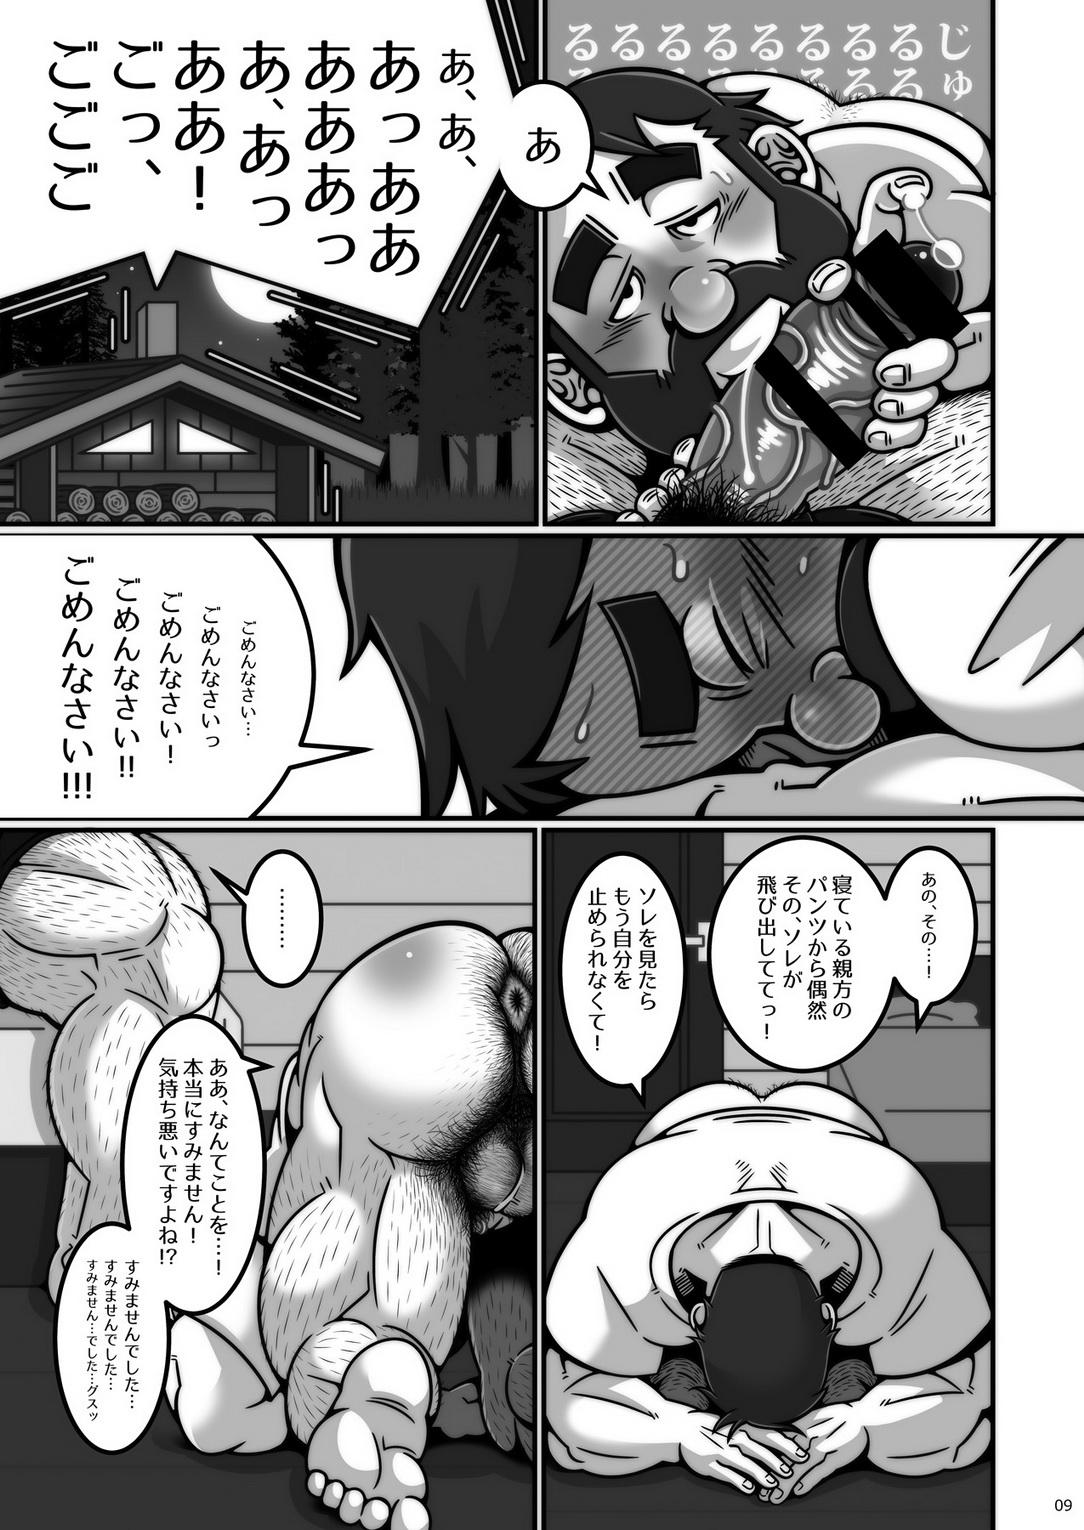 Celeb [Warau Biteikotsu (Dobunezumi) Kikori no shitei [Digital] Missionary Porn - Page 10